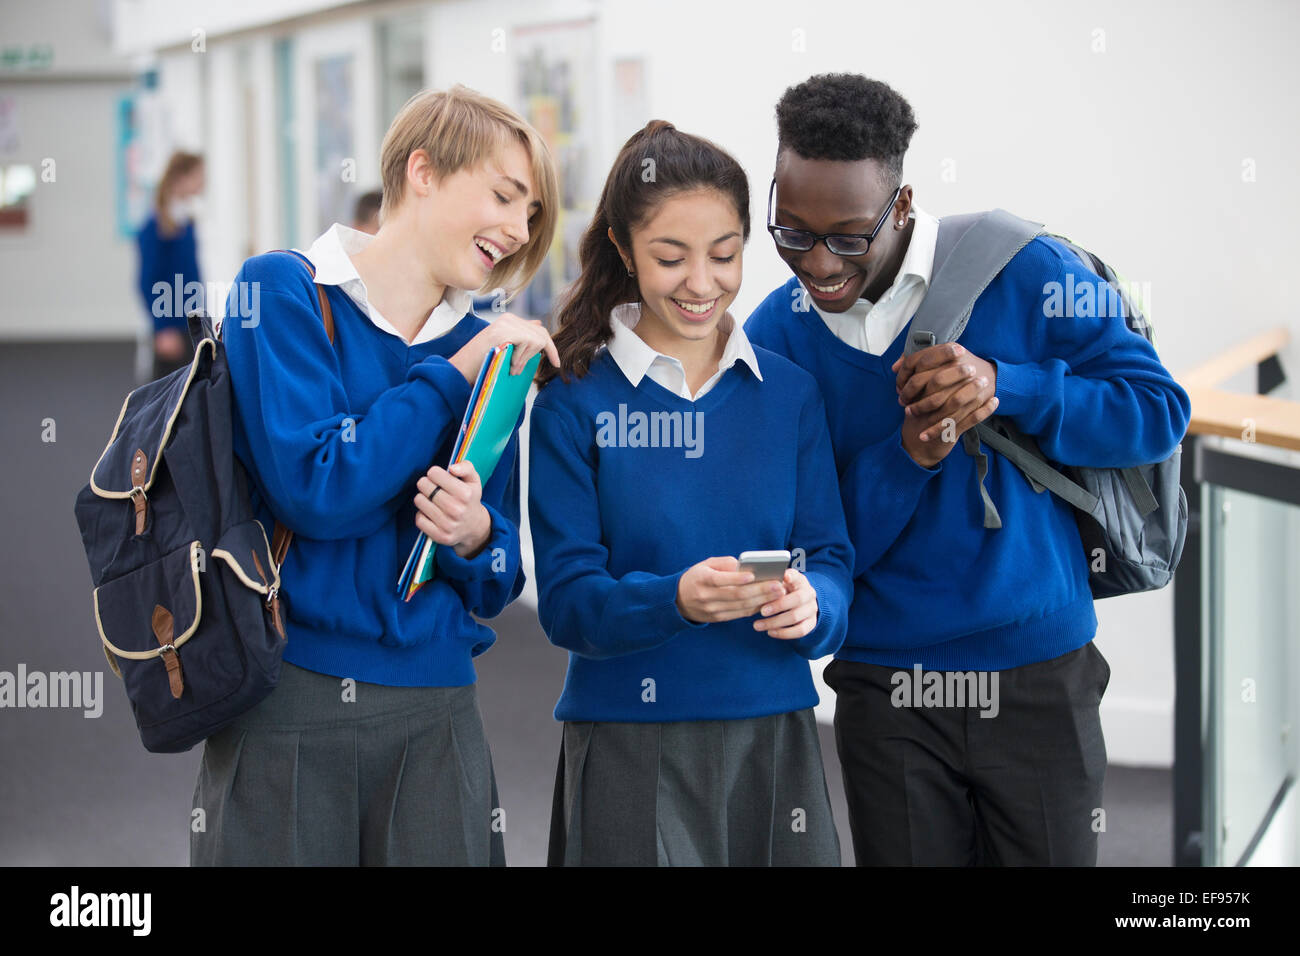 Drei lachende Studenten tragen blaue Uniformen mit Handy in Schule Flur Stockfoto